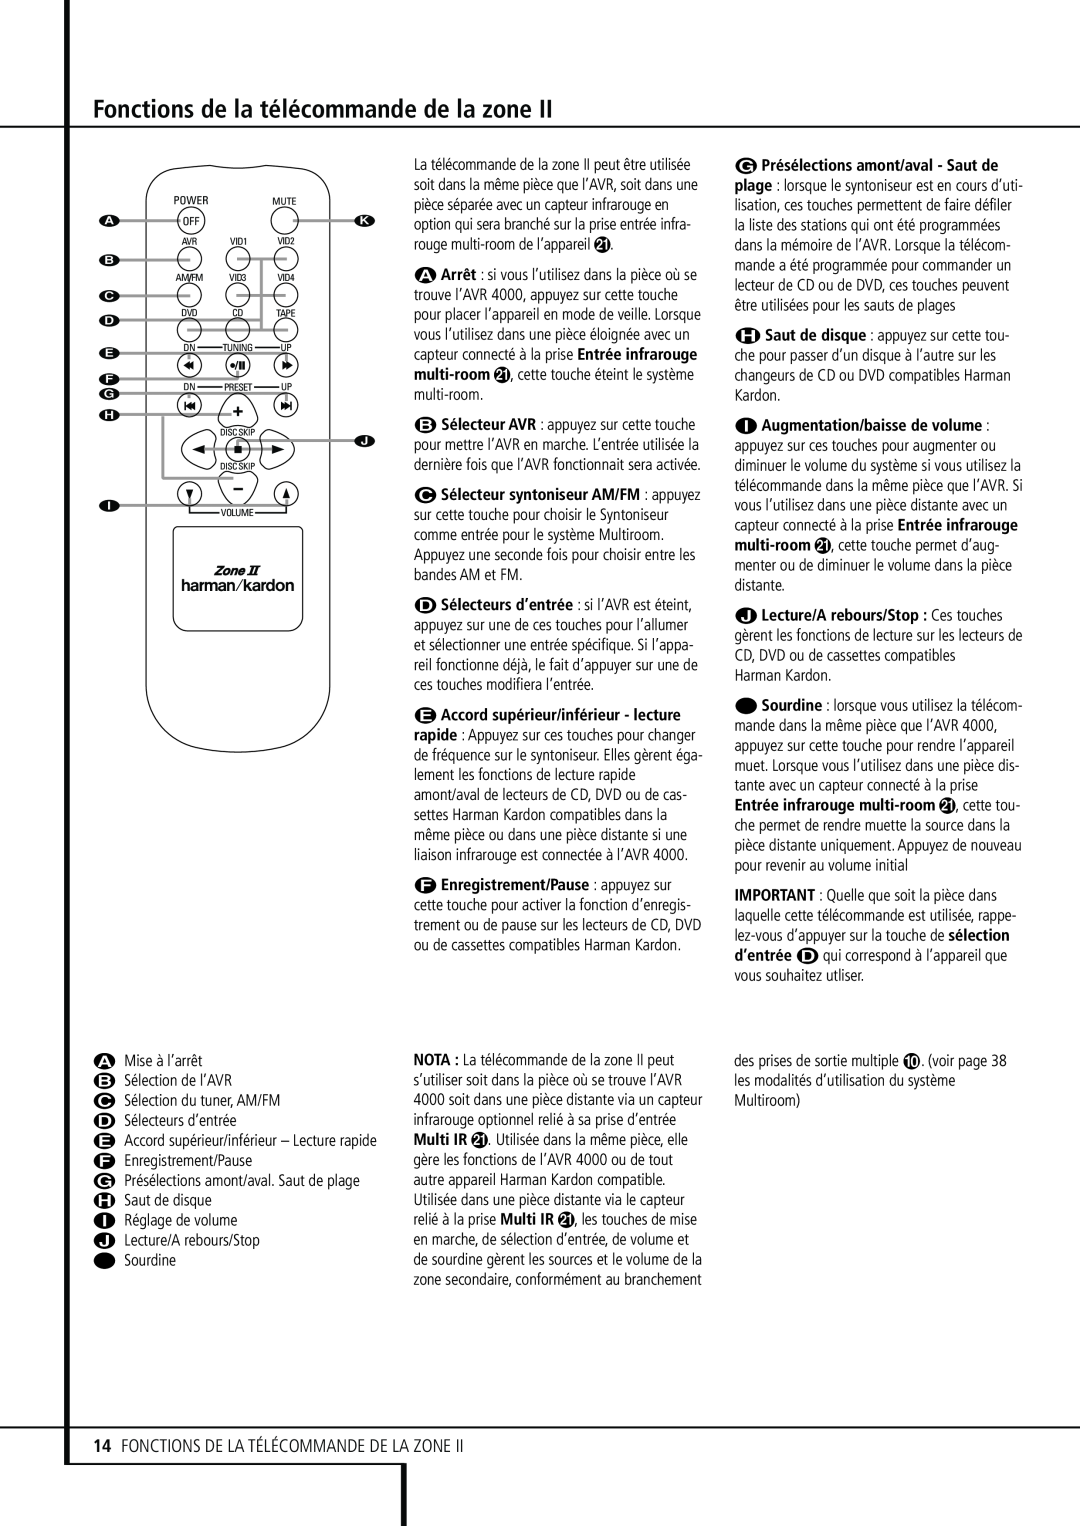 Harman-Kardon 374, Stereo Receiver manual Fonctions de la télécommande de la zone, 14FONCTIONS DE LA TÉLÉCOMMANDE DE LA ZONE 